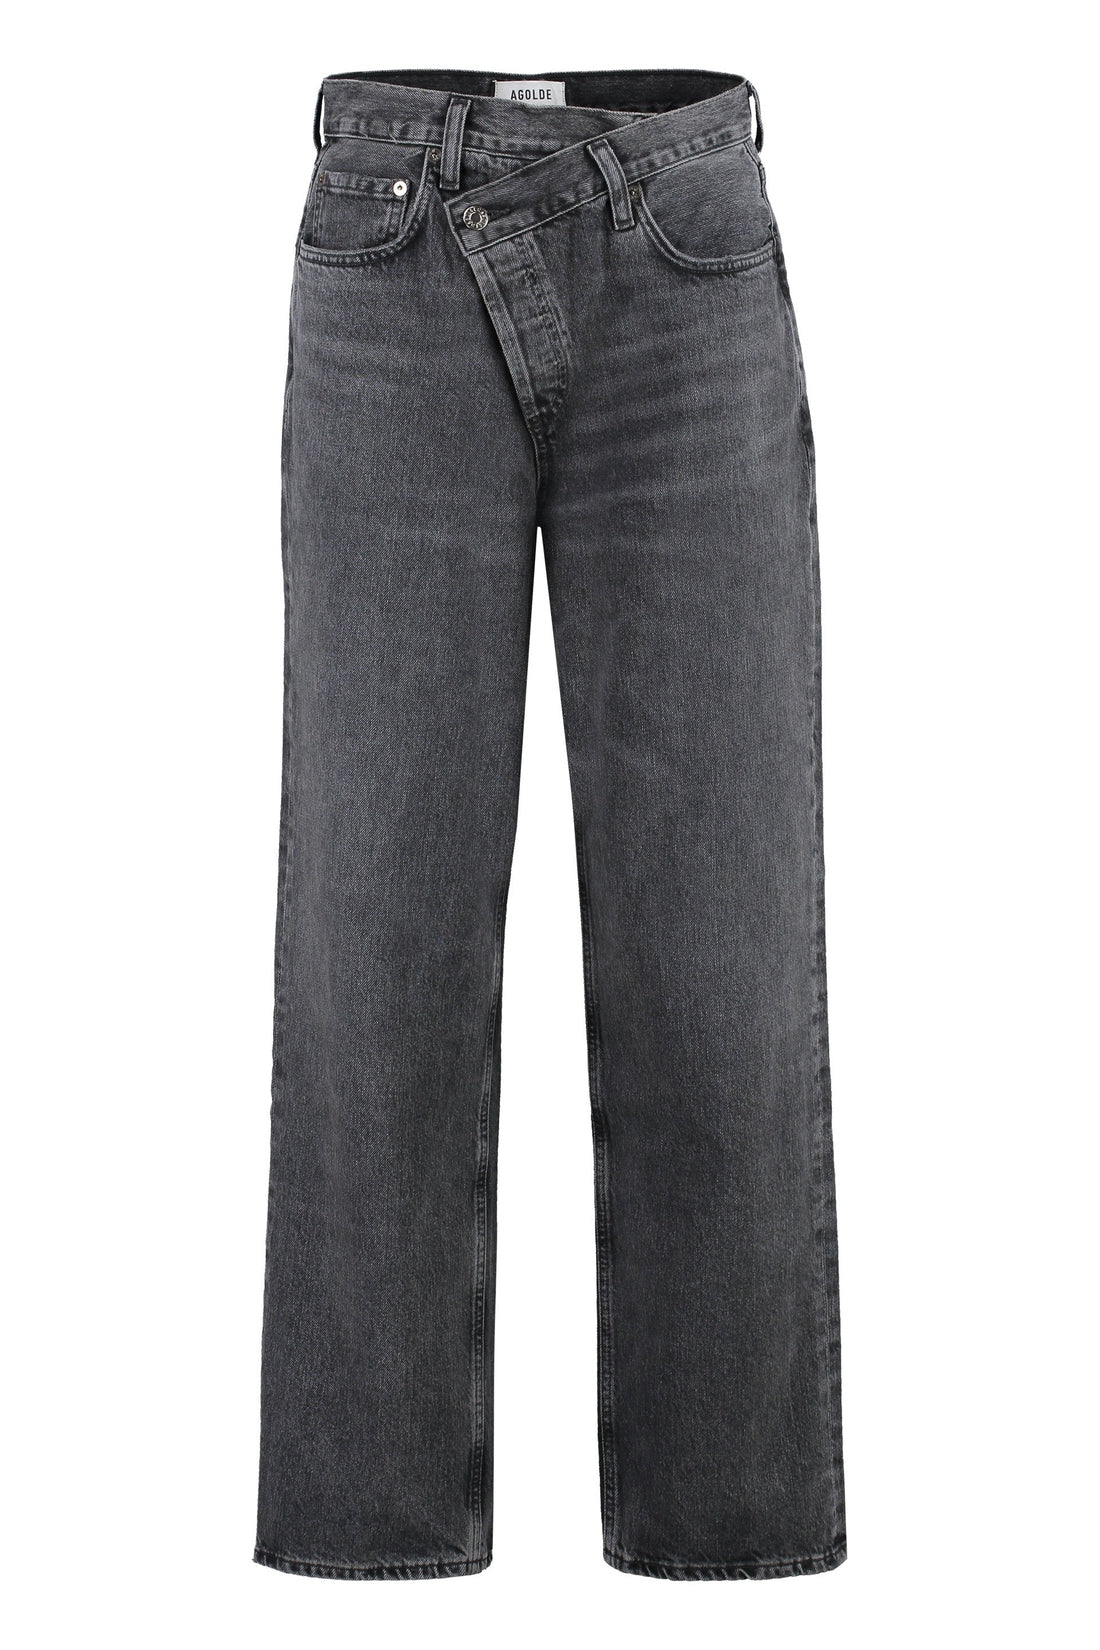 AGOLDE-OUTLET-SALE-Criss Cross jeans-ARCHIVIST